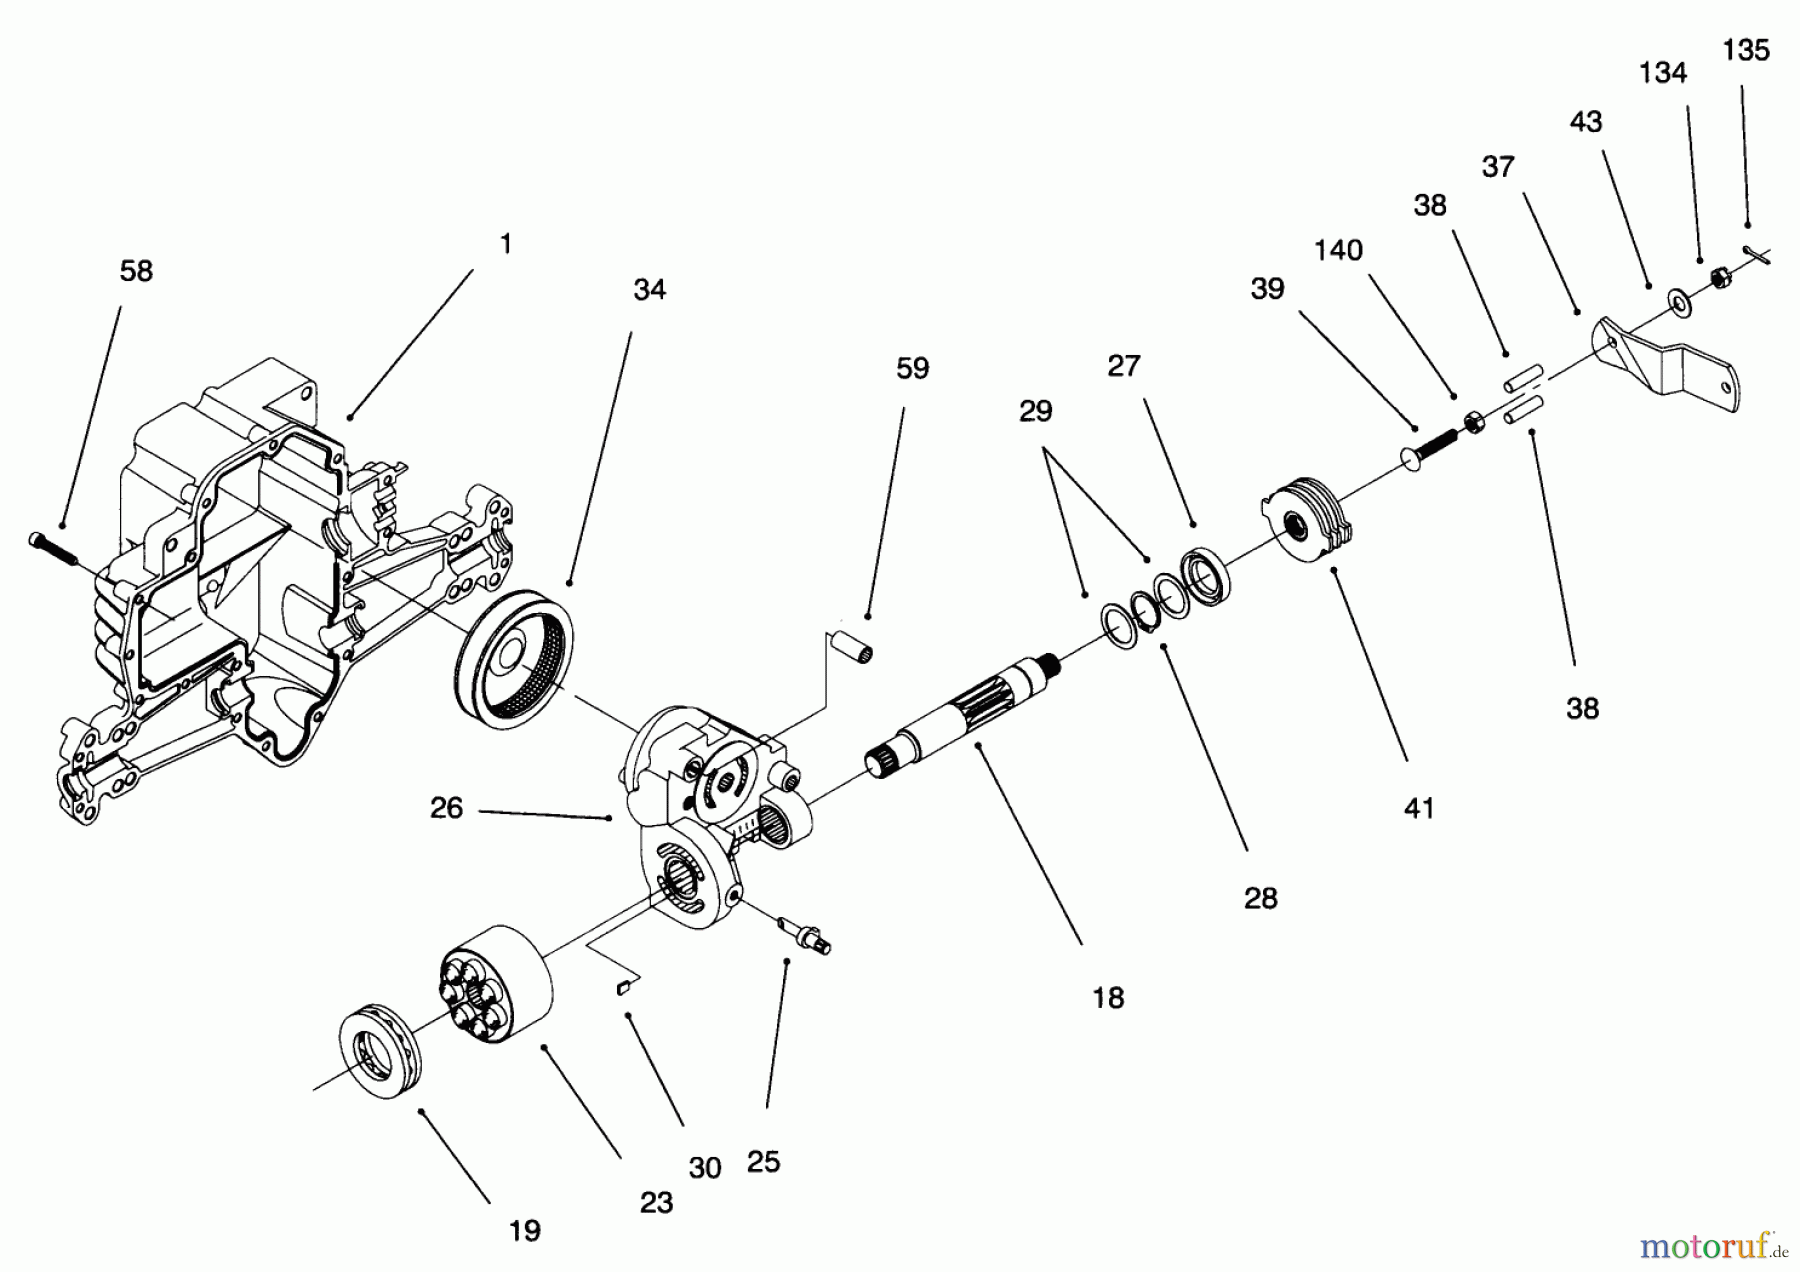  Toro Neu Mowers, Lawn & Garden Tractor Seite 1 71217 (14-38HXL) - Toro 14-38HXL Lawn Tractor, 1996 (6900001-6999999) HYDRO TRANSAXLE ASSEMBLY #4